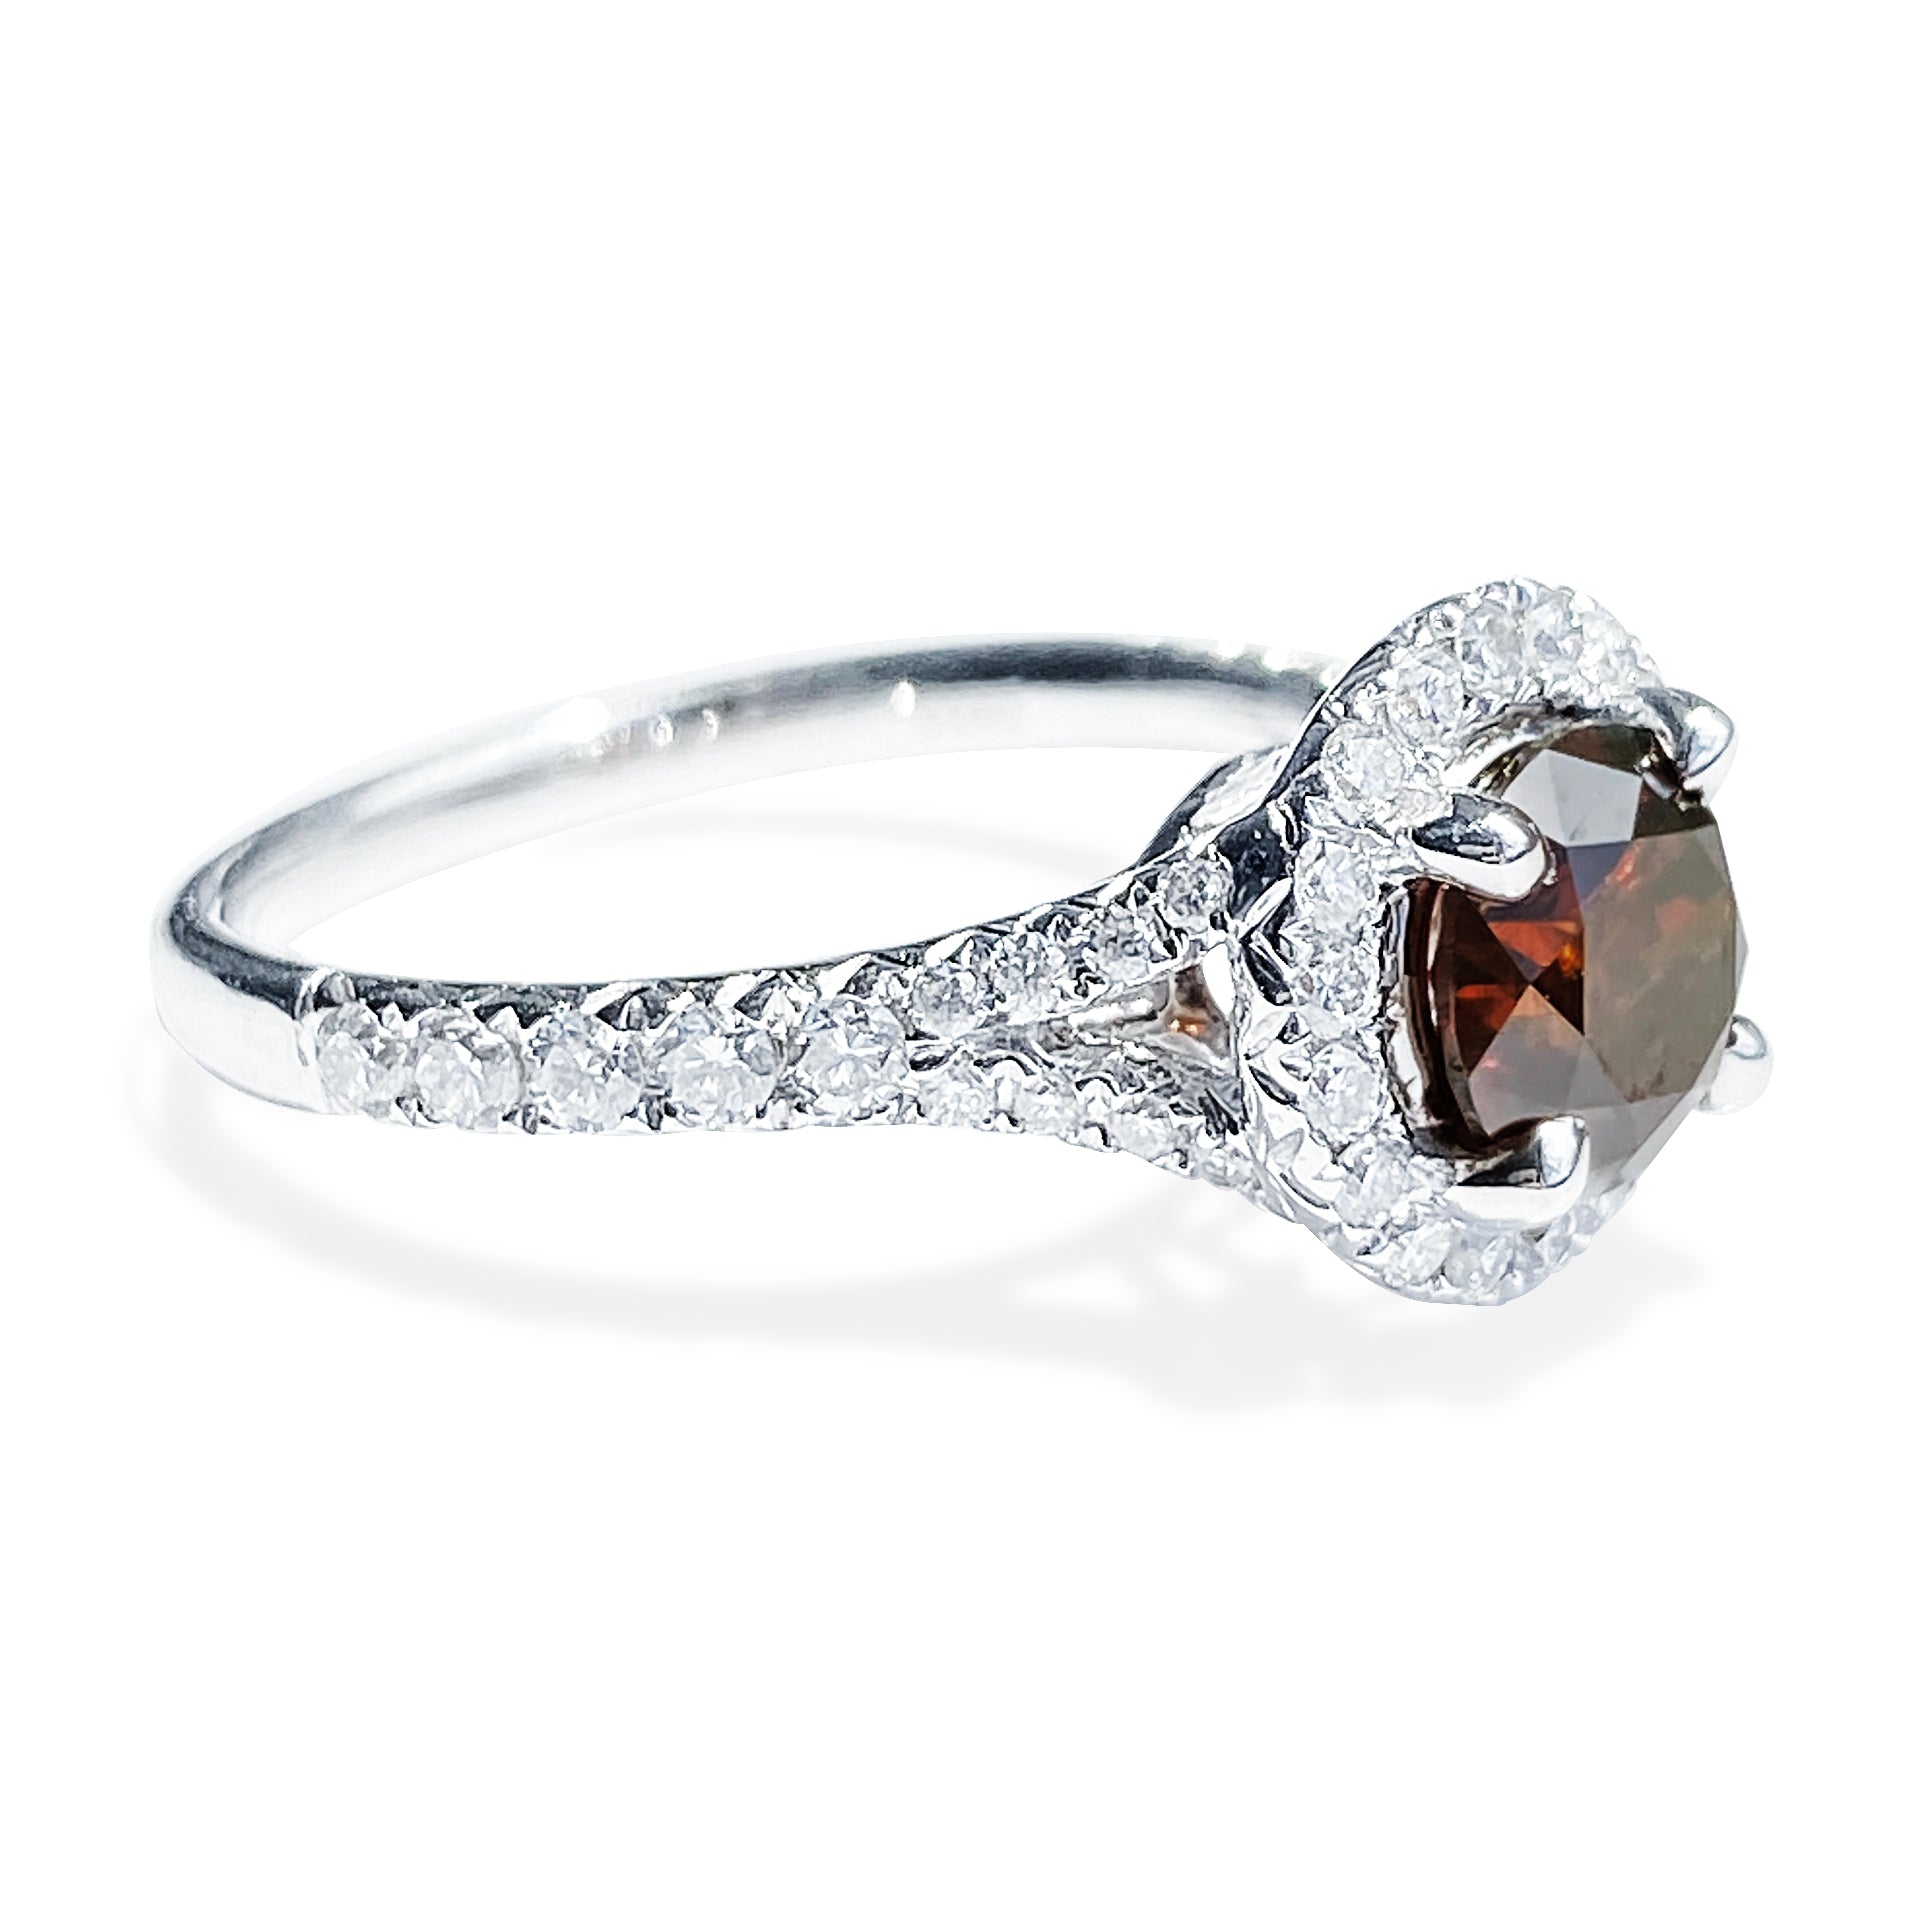 1.18 Carat Orange-Brown Round Brilliant Diamond Ring